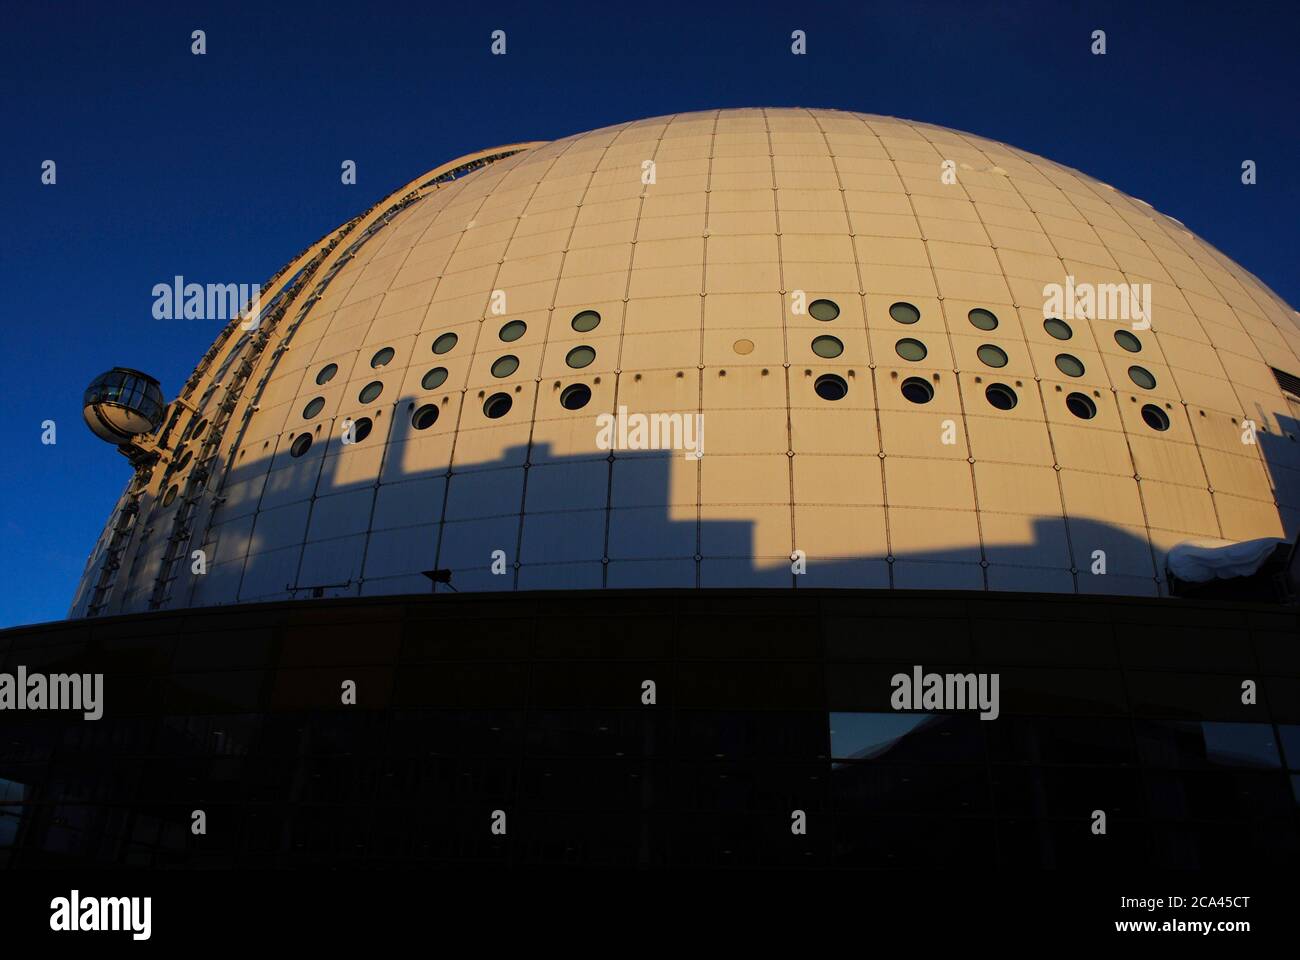 Ericsson Globe. Gedecktes Stadion, erbaut zwischen 1986 und 1989 von Svante Berg und Lars Vretblad. Standseilbahn. Schweden, Stockholm. Stockfoto